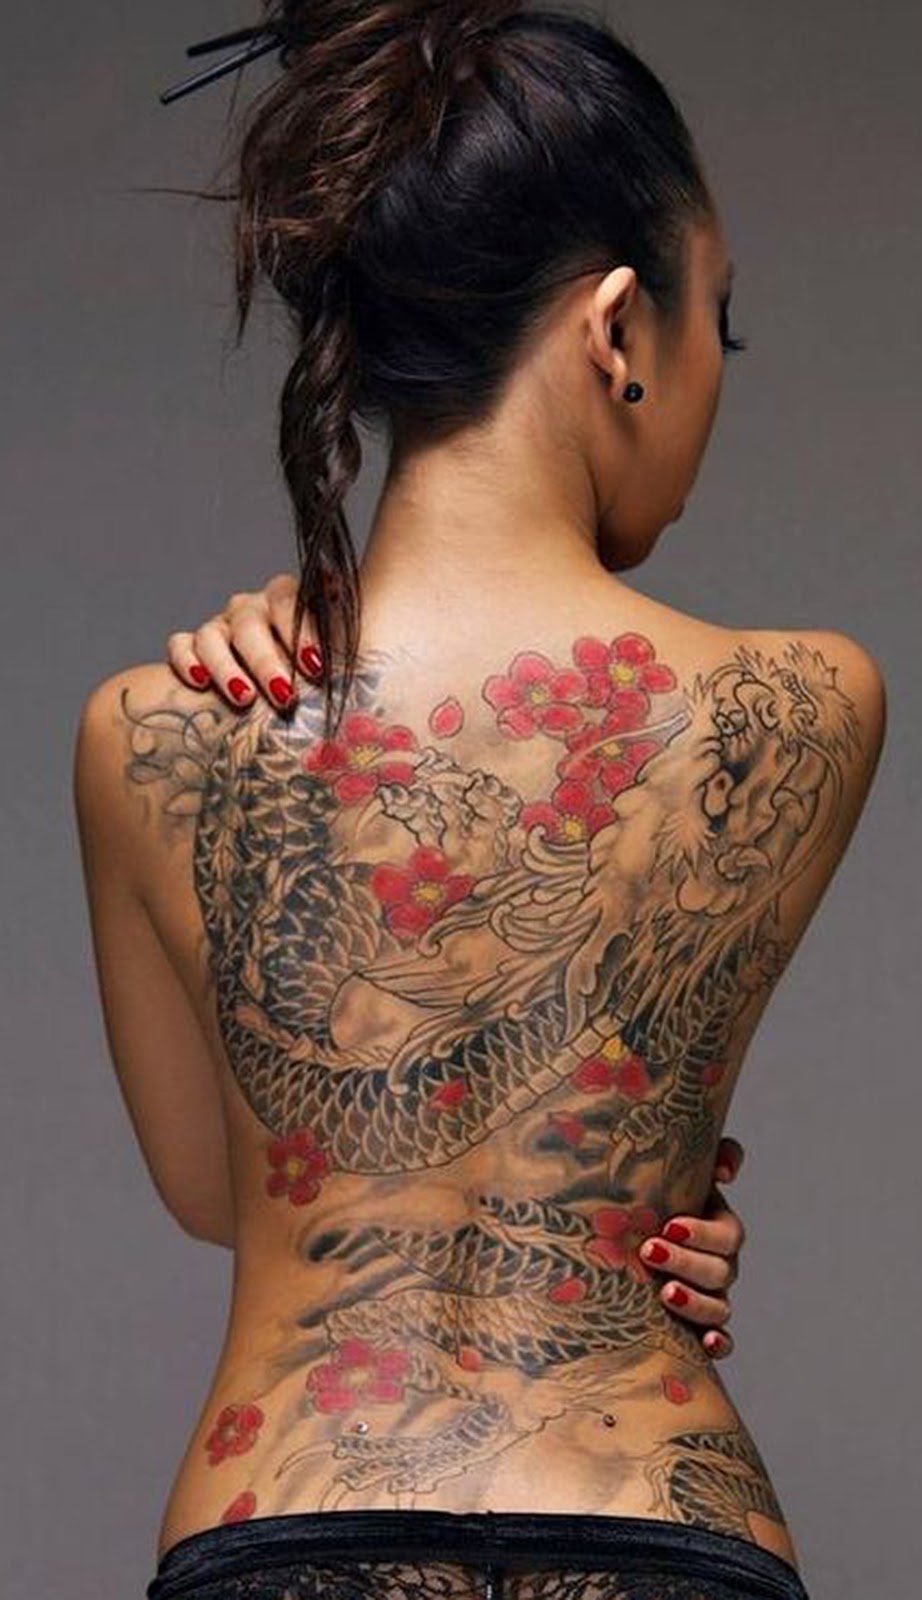 Азиатка с татуировкой дракона на спине (25 фото)